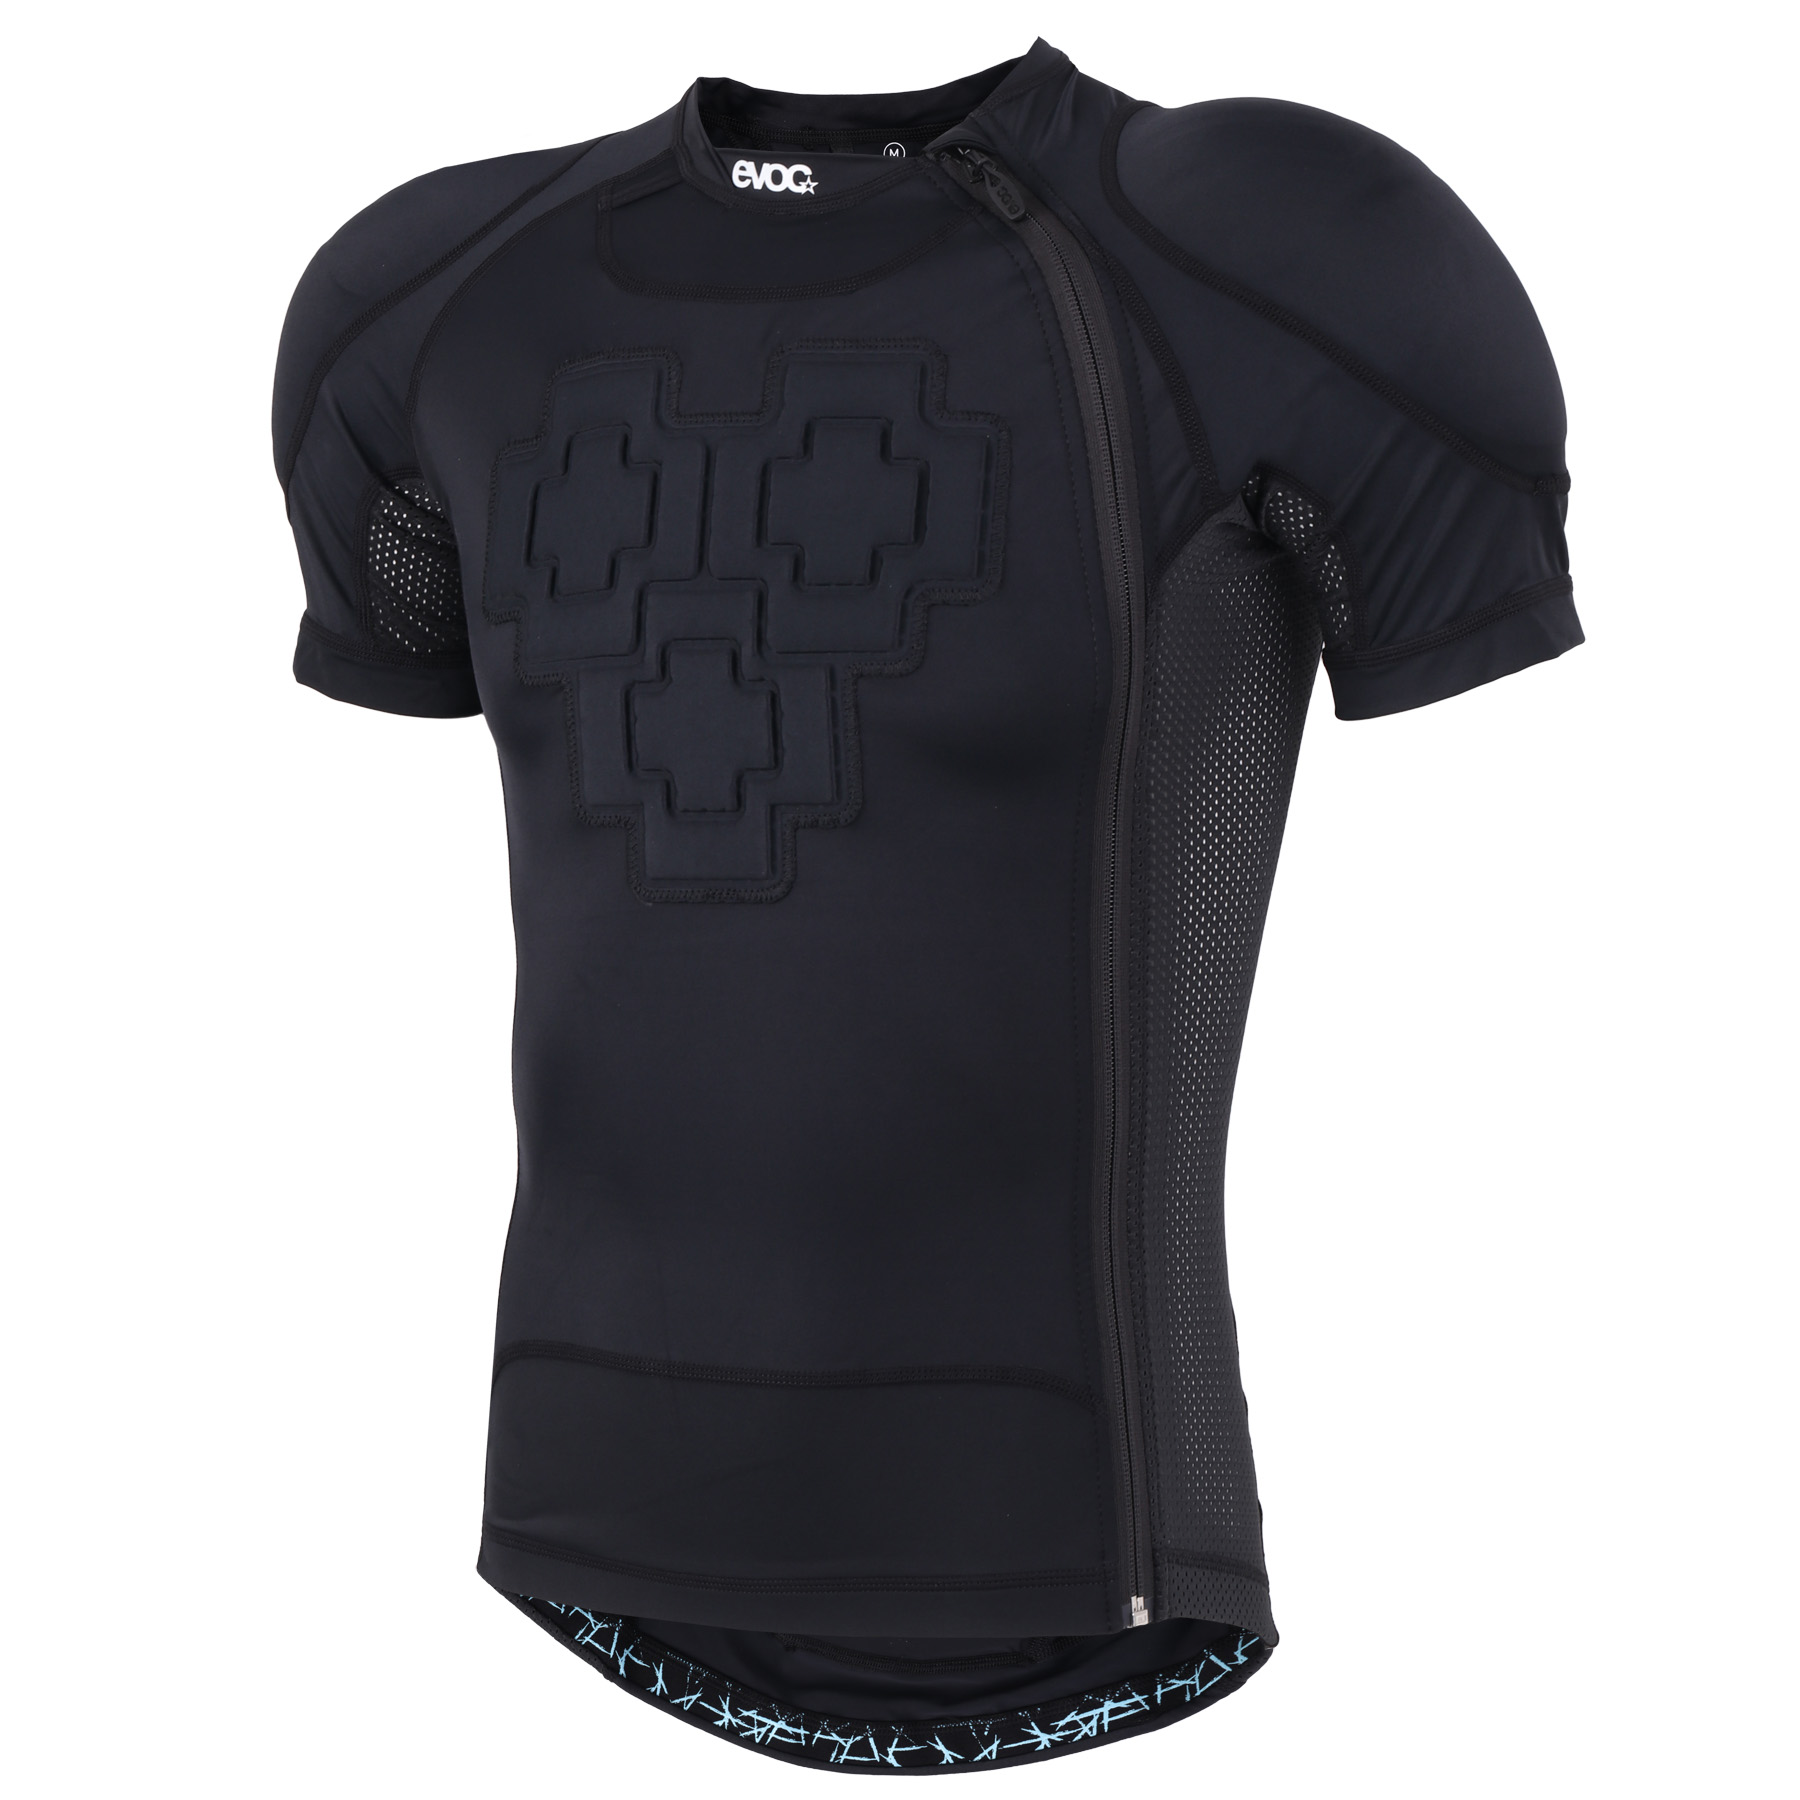 Produktbild von EVOC Protector Shirt Zip Protektorenshirt - Schwarz - 2023